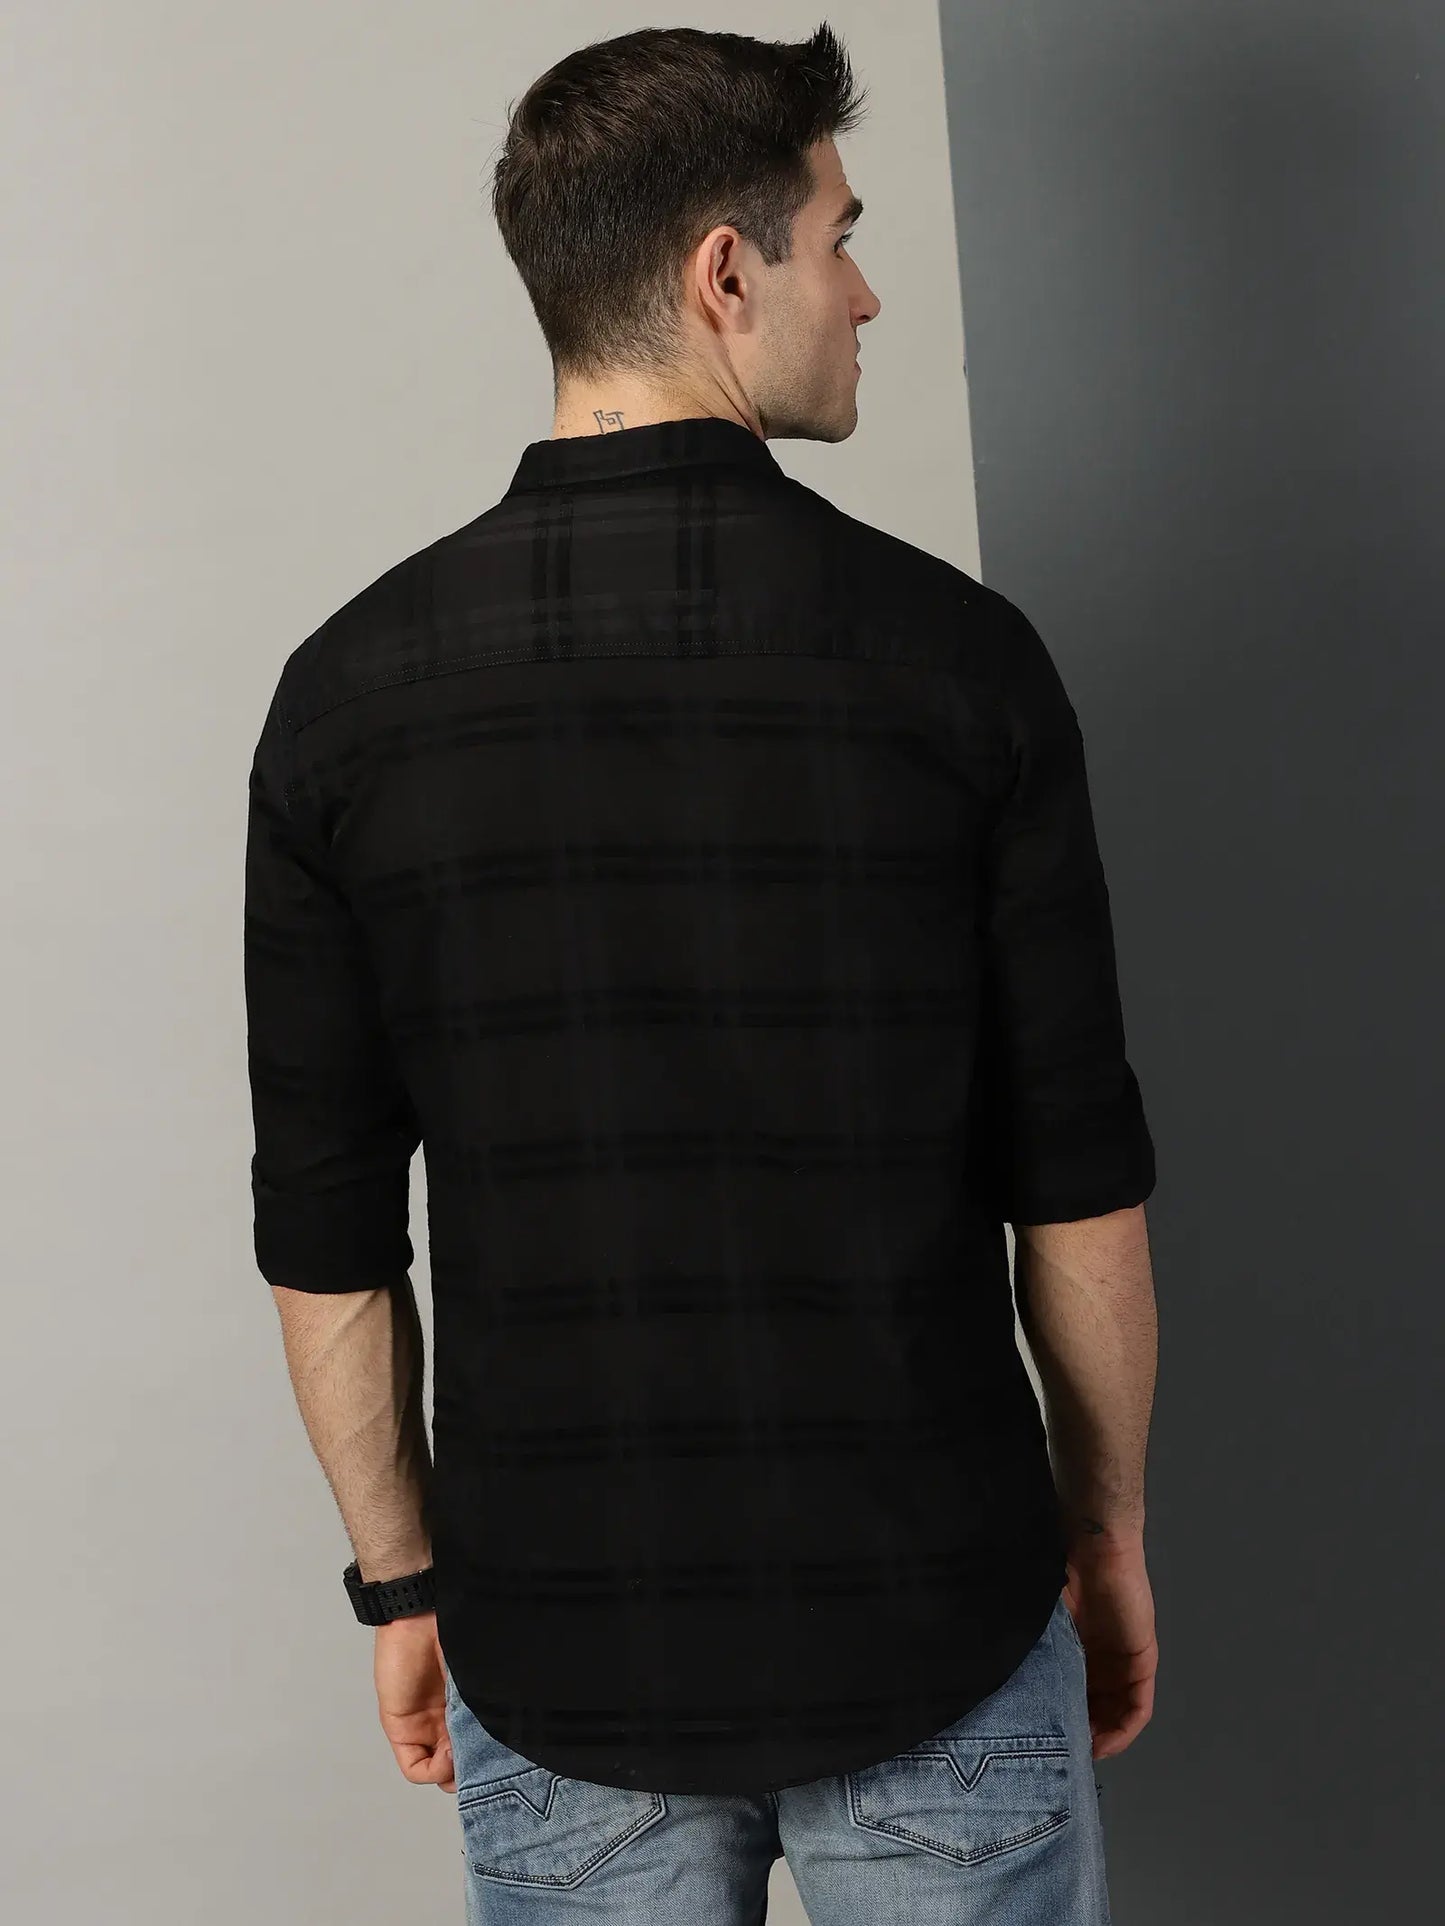 Black Checks Textured Full Sleeve Men's Shirt